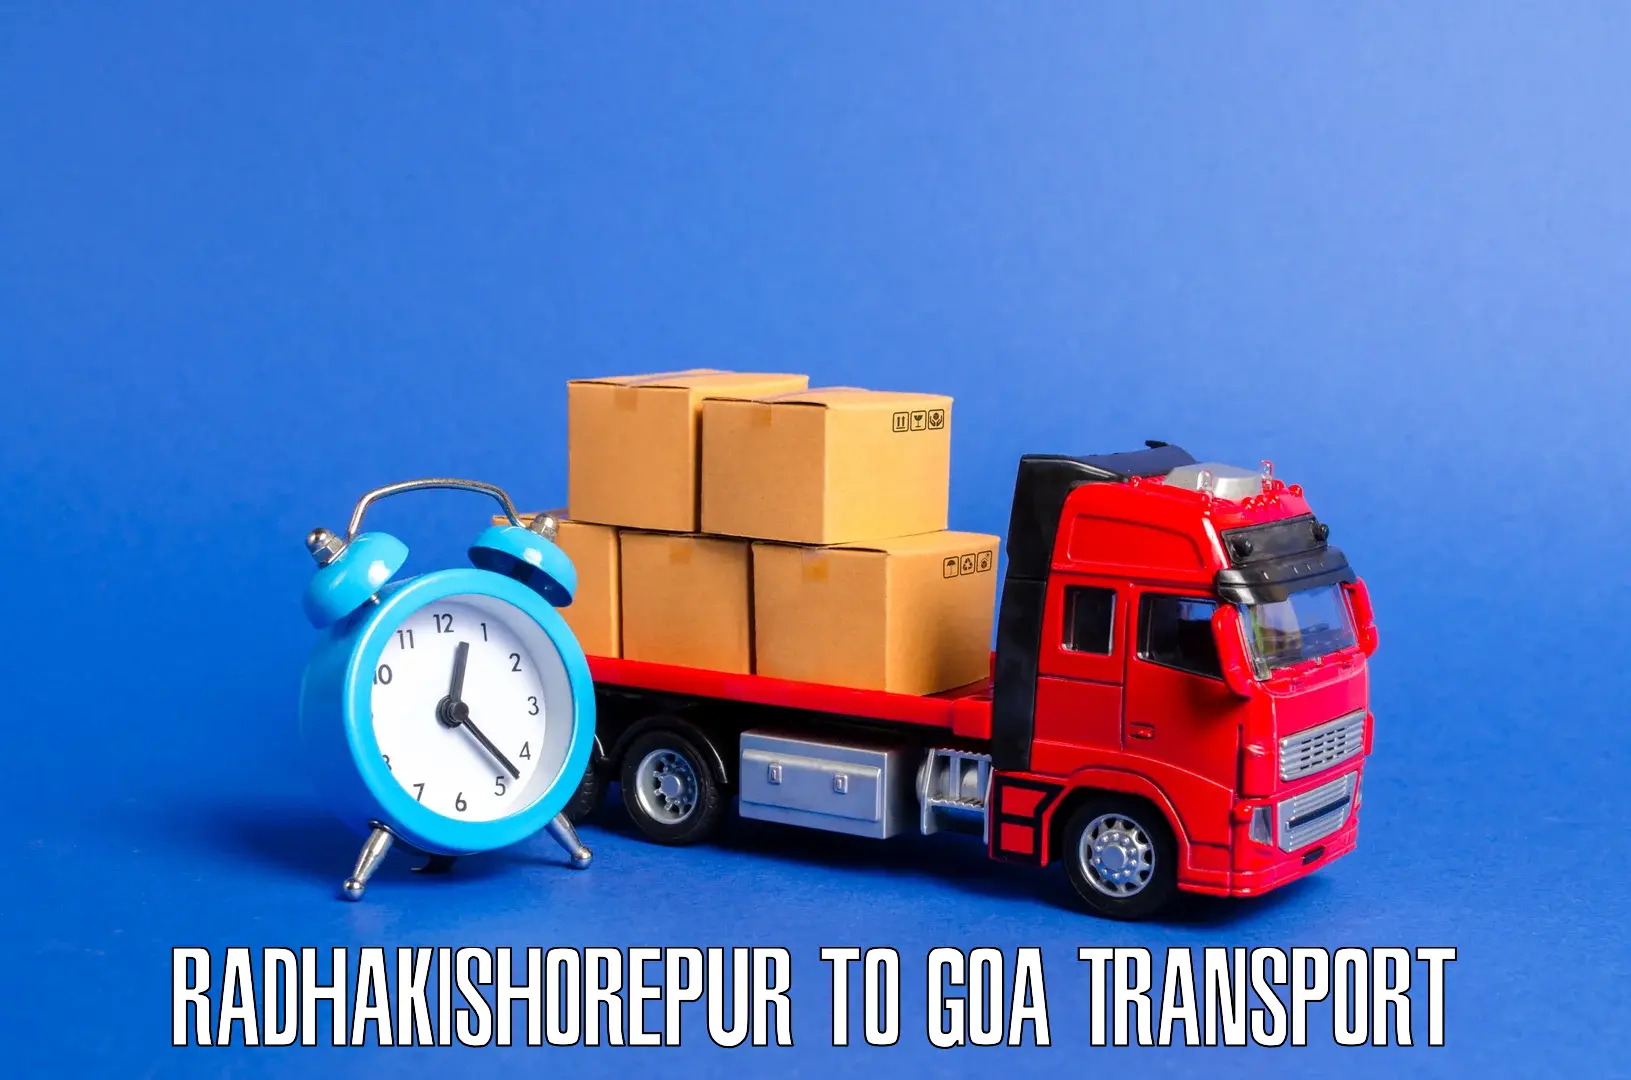 Nearest transport service Radhakishorepur to IIT Goa